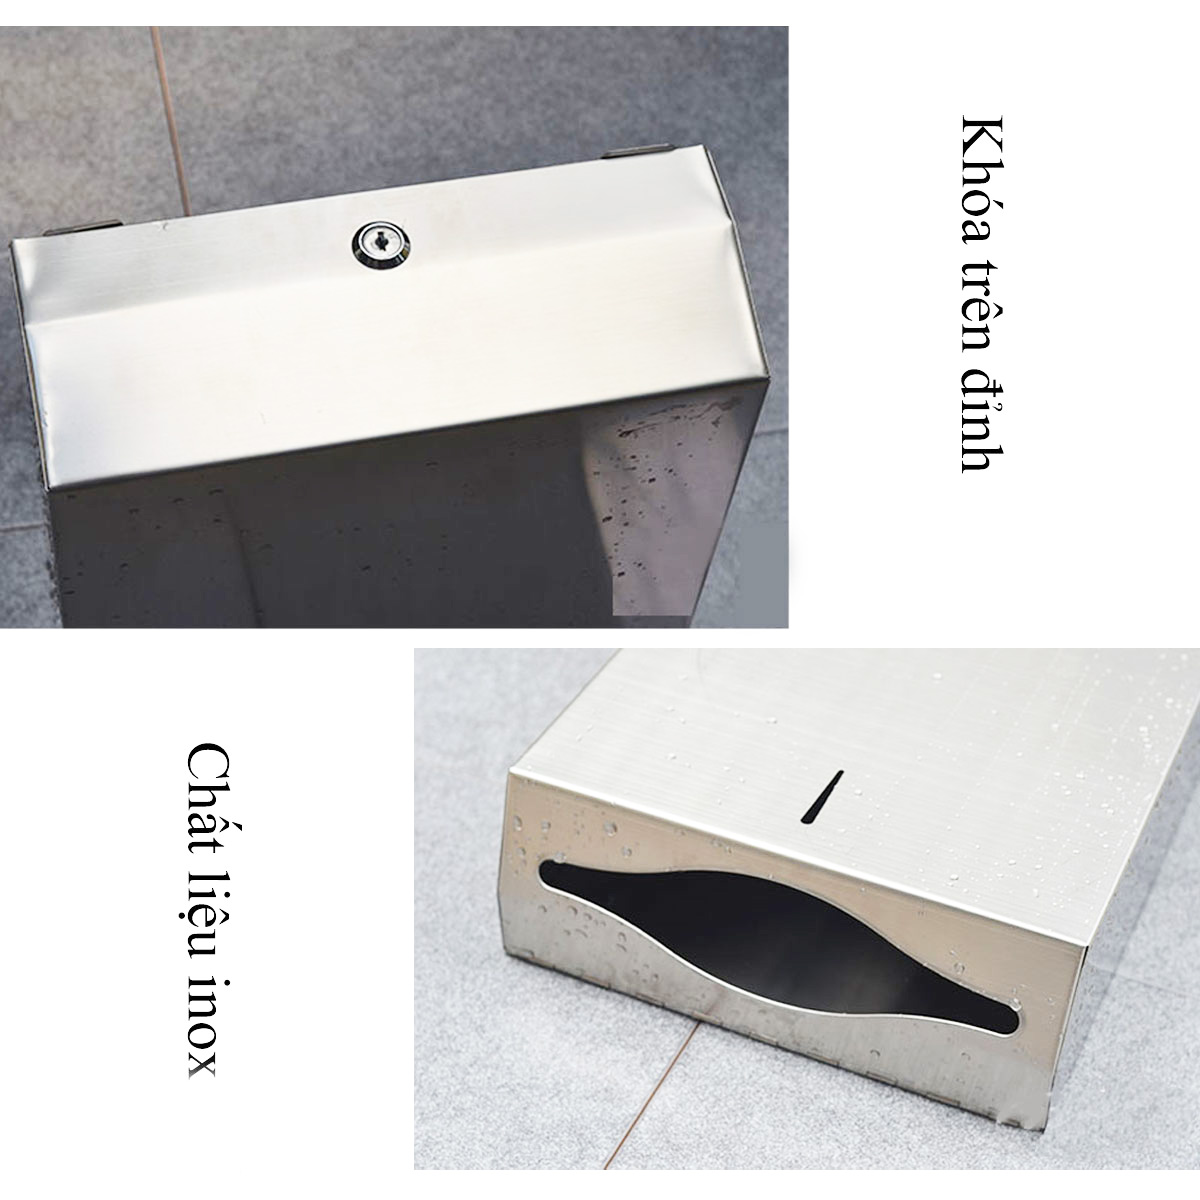 Hộp đựng giấy vệ sinh rút lớn chữ nhật, giấy công nghiệp RANCO gắn tường chất liệu inox chống gỉ sét bền đẹp – R08955